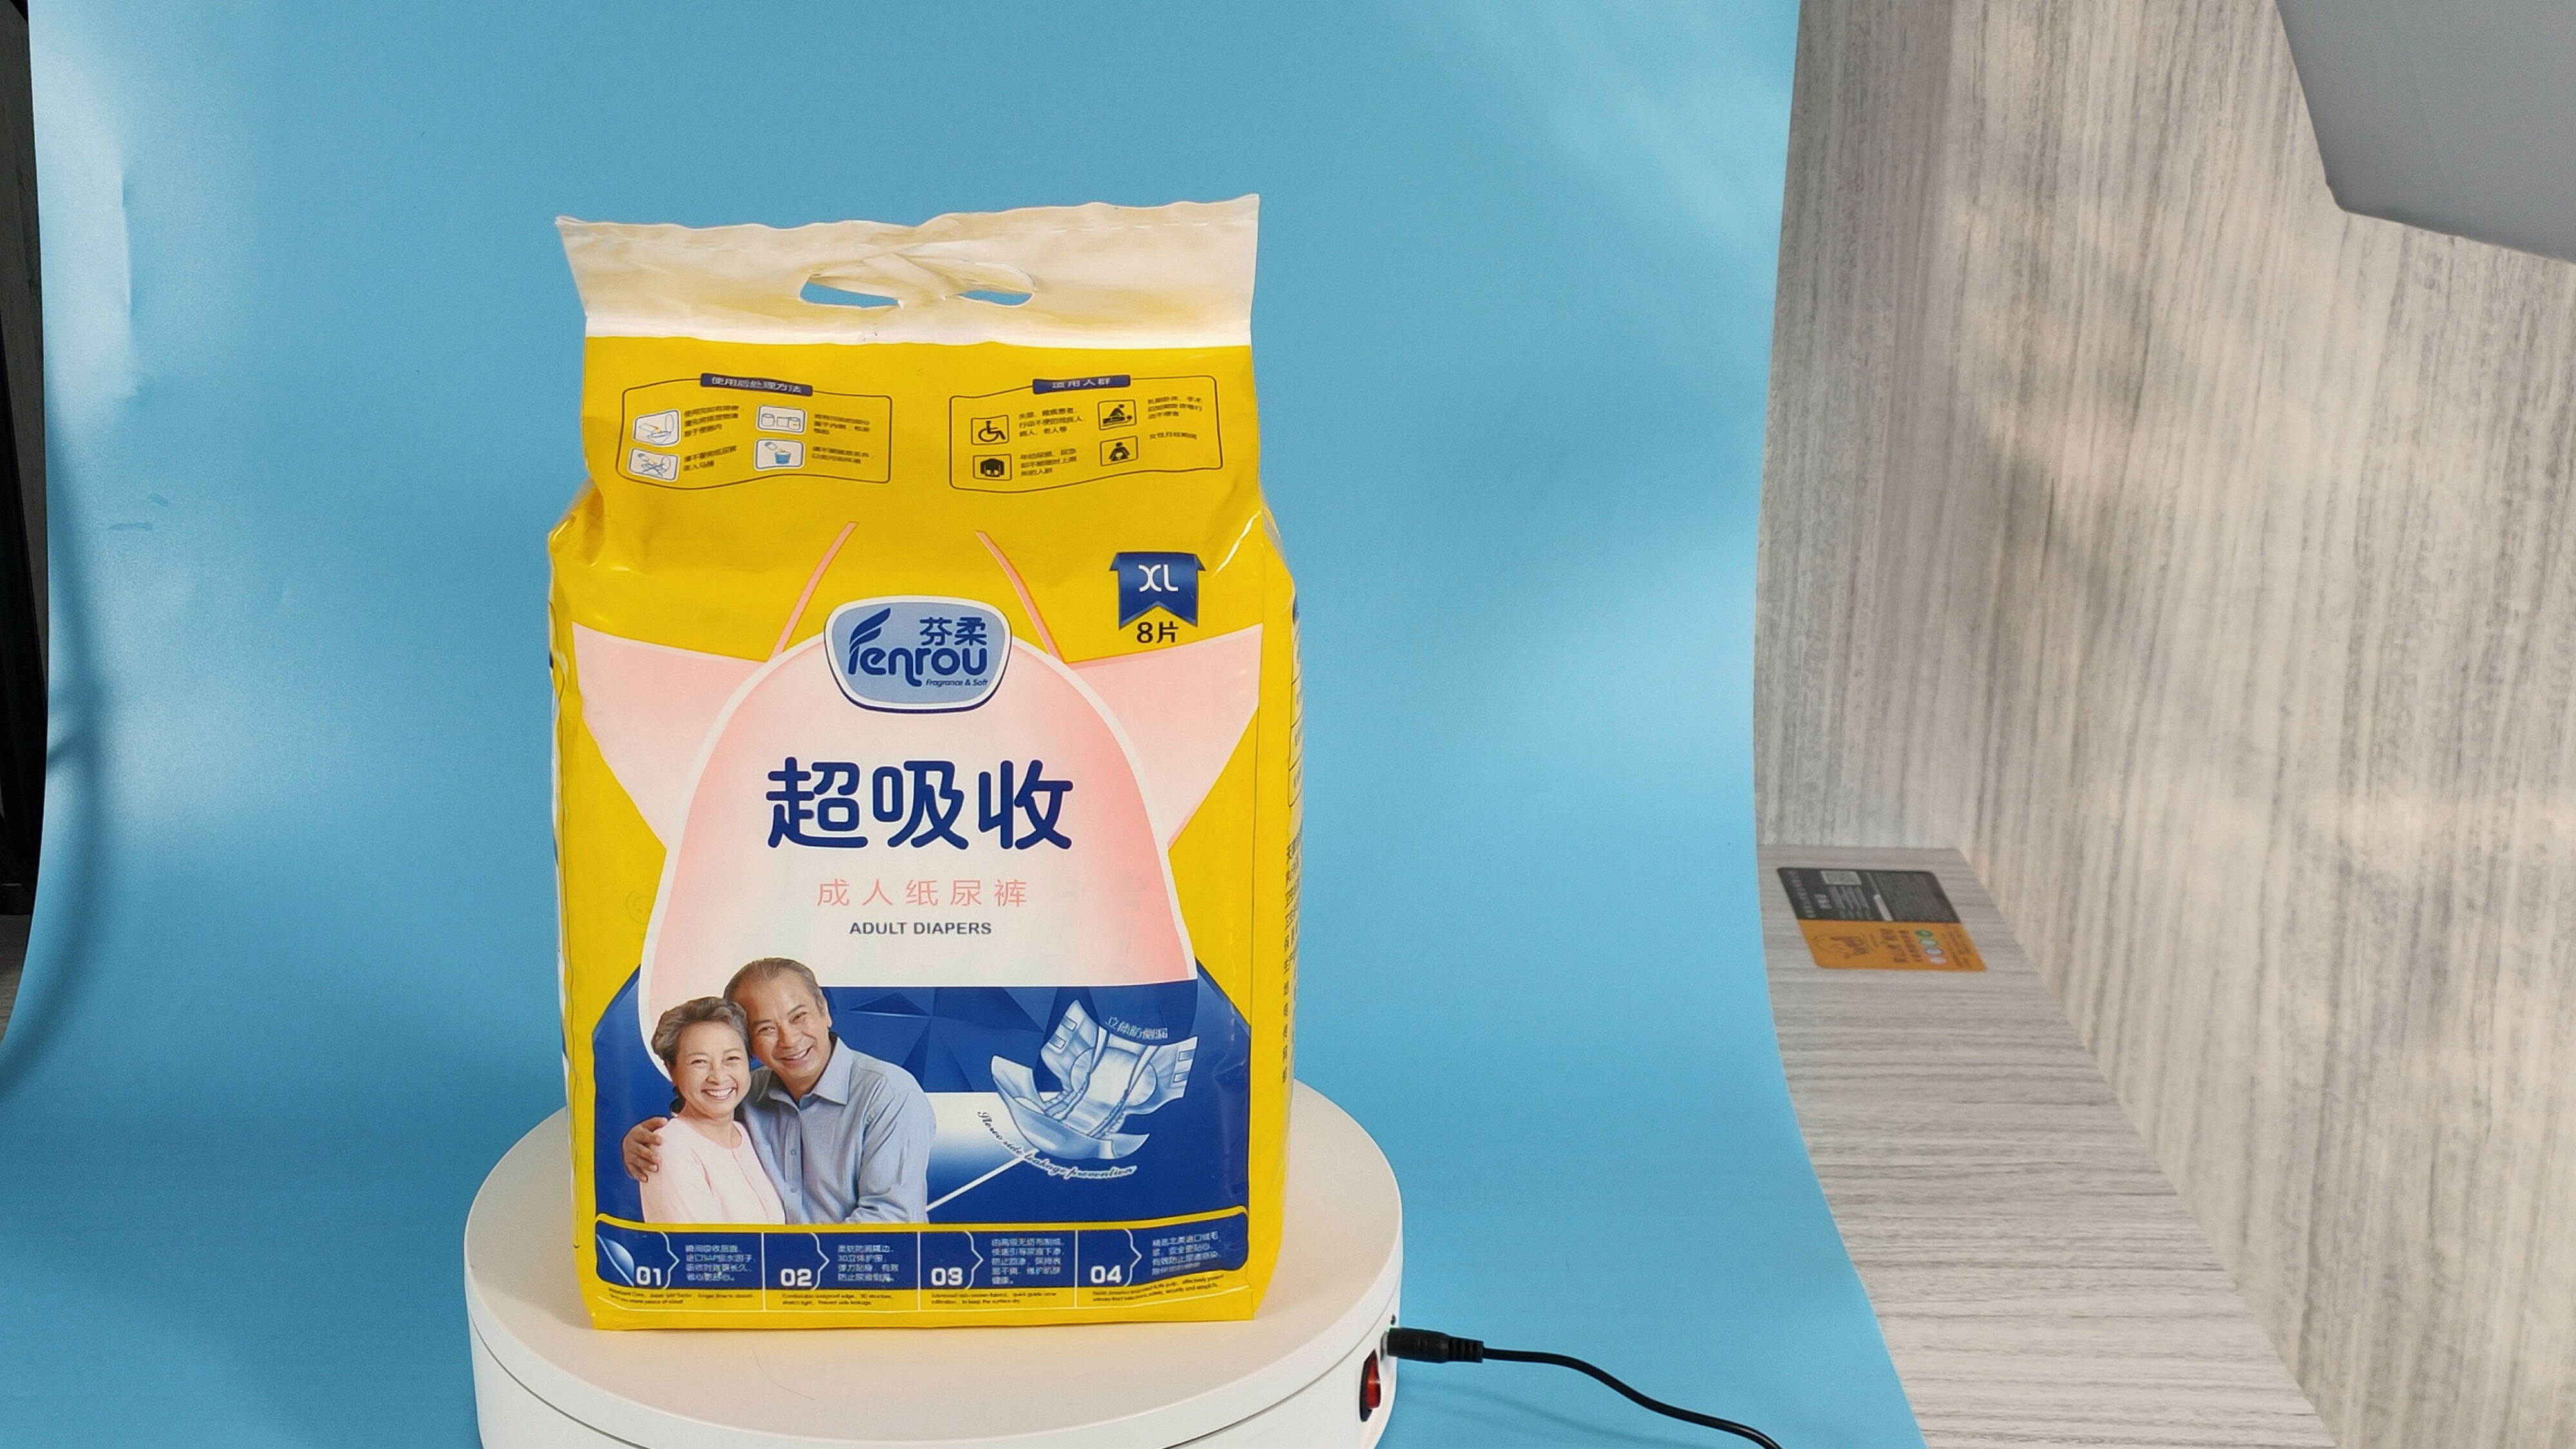 Pannolino per adulti bianco per incontinenza per pannolini per adulti ad asciugatura rapida professionale del produttore cinese